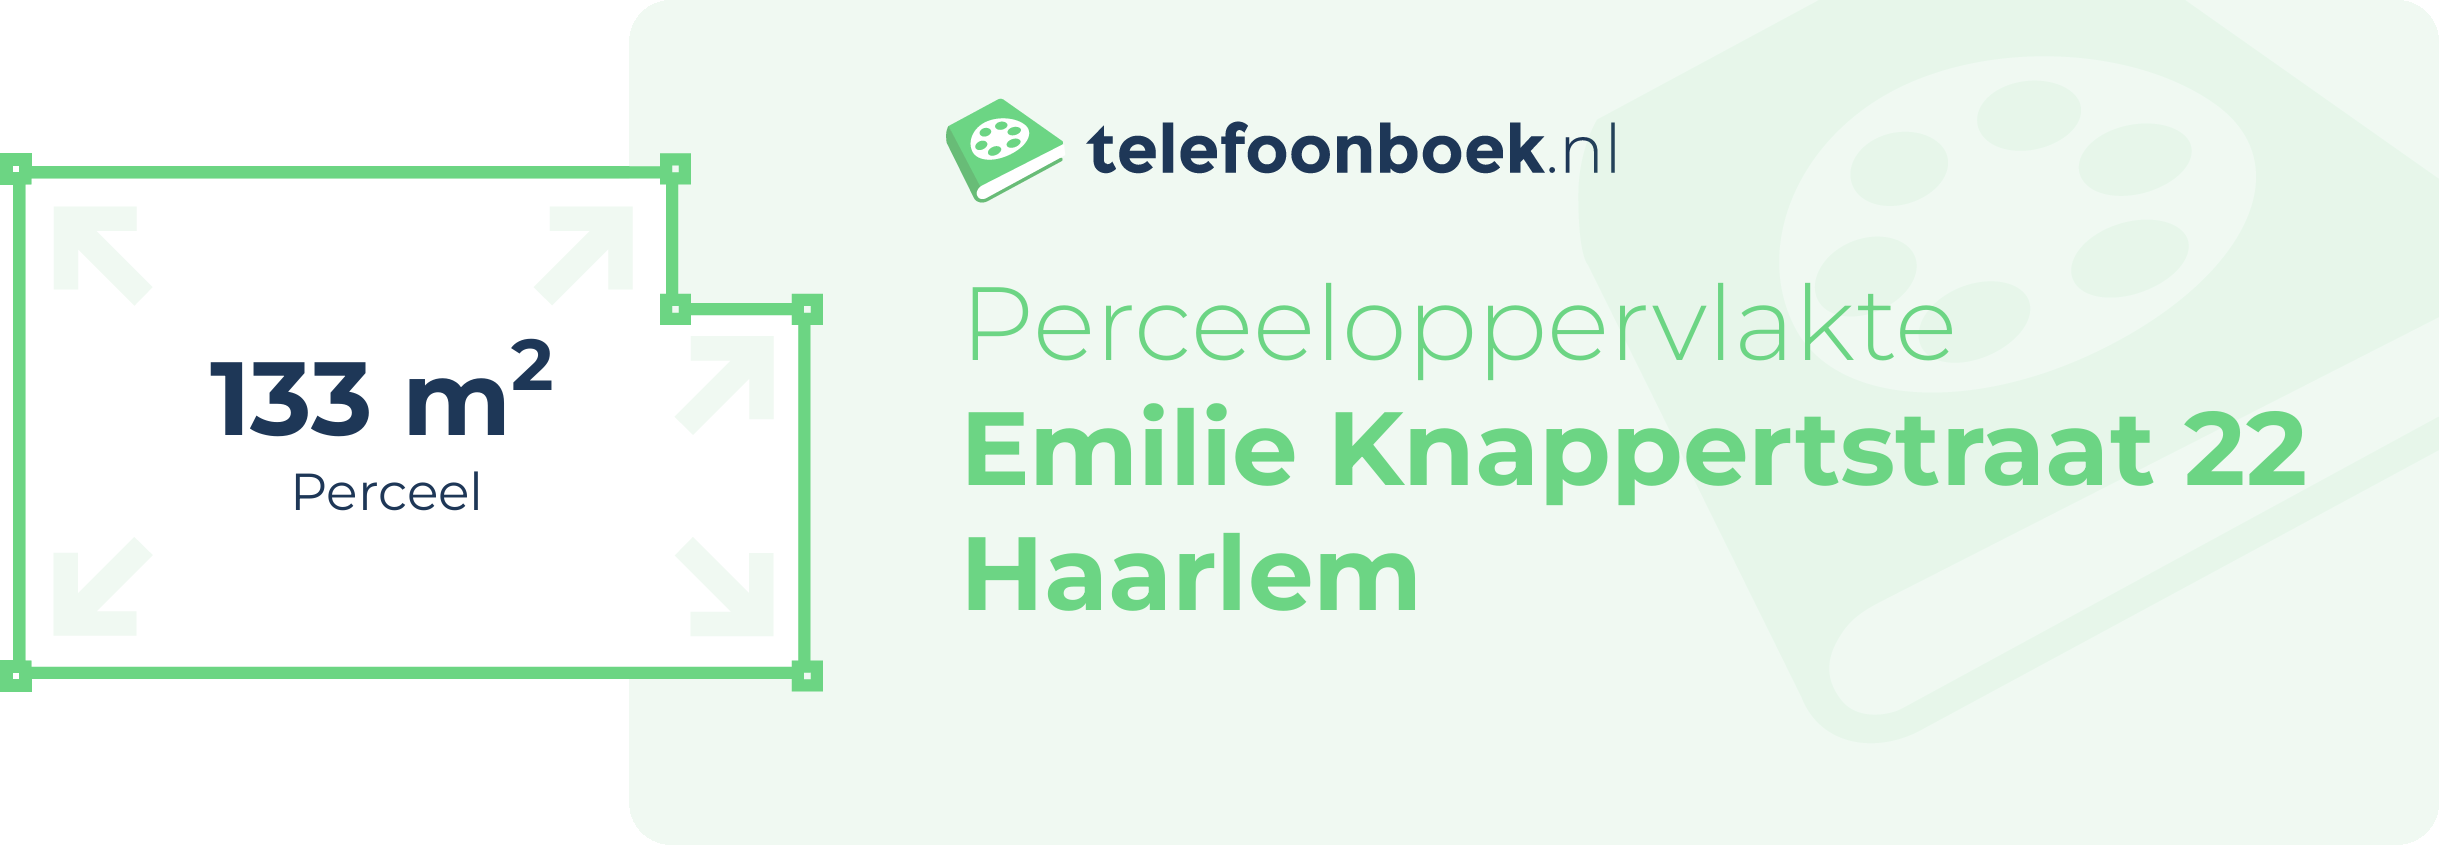 Perceeloppervlakte Emilie Knappertstraat 22 Haarlem